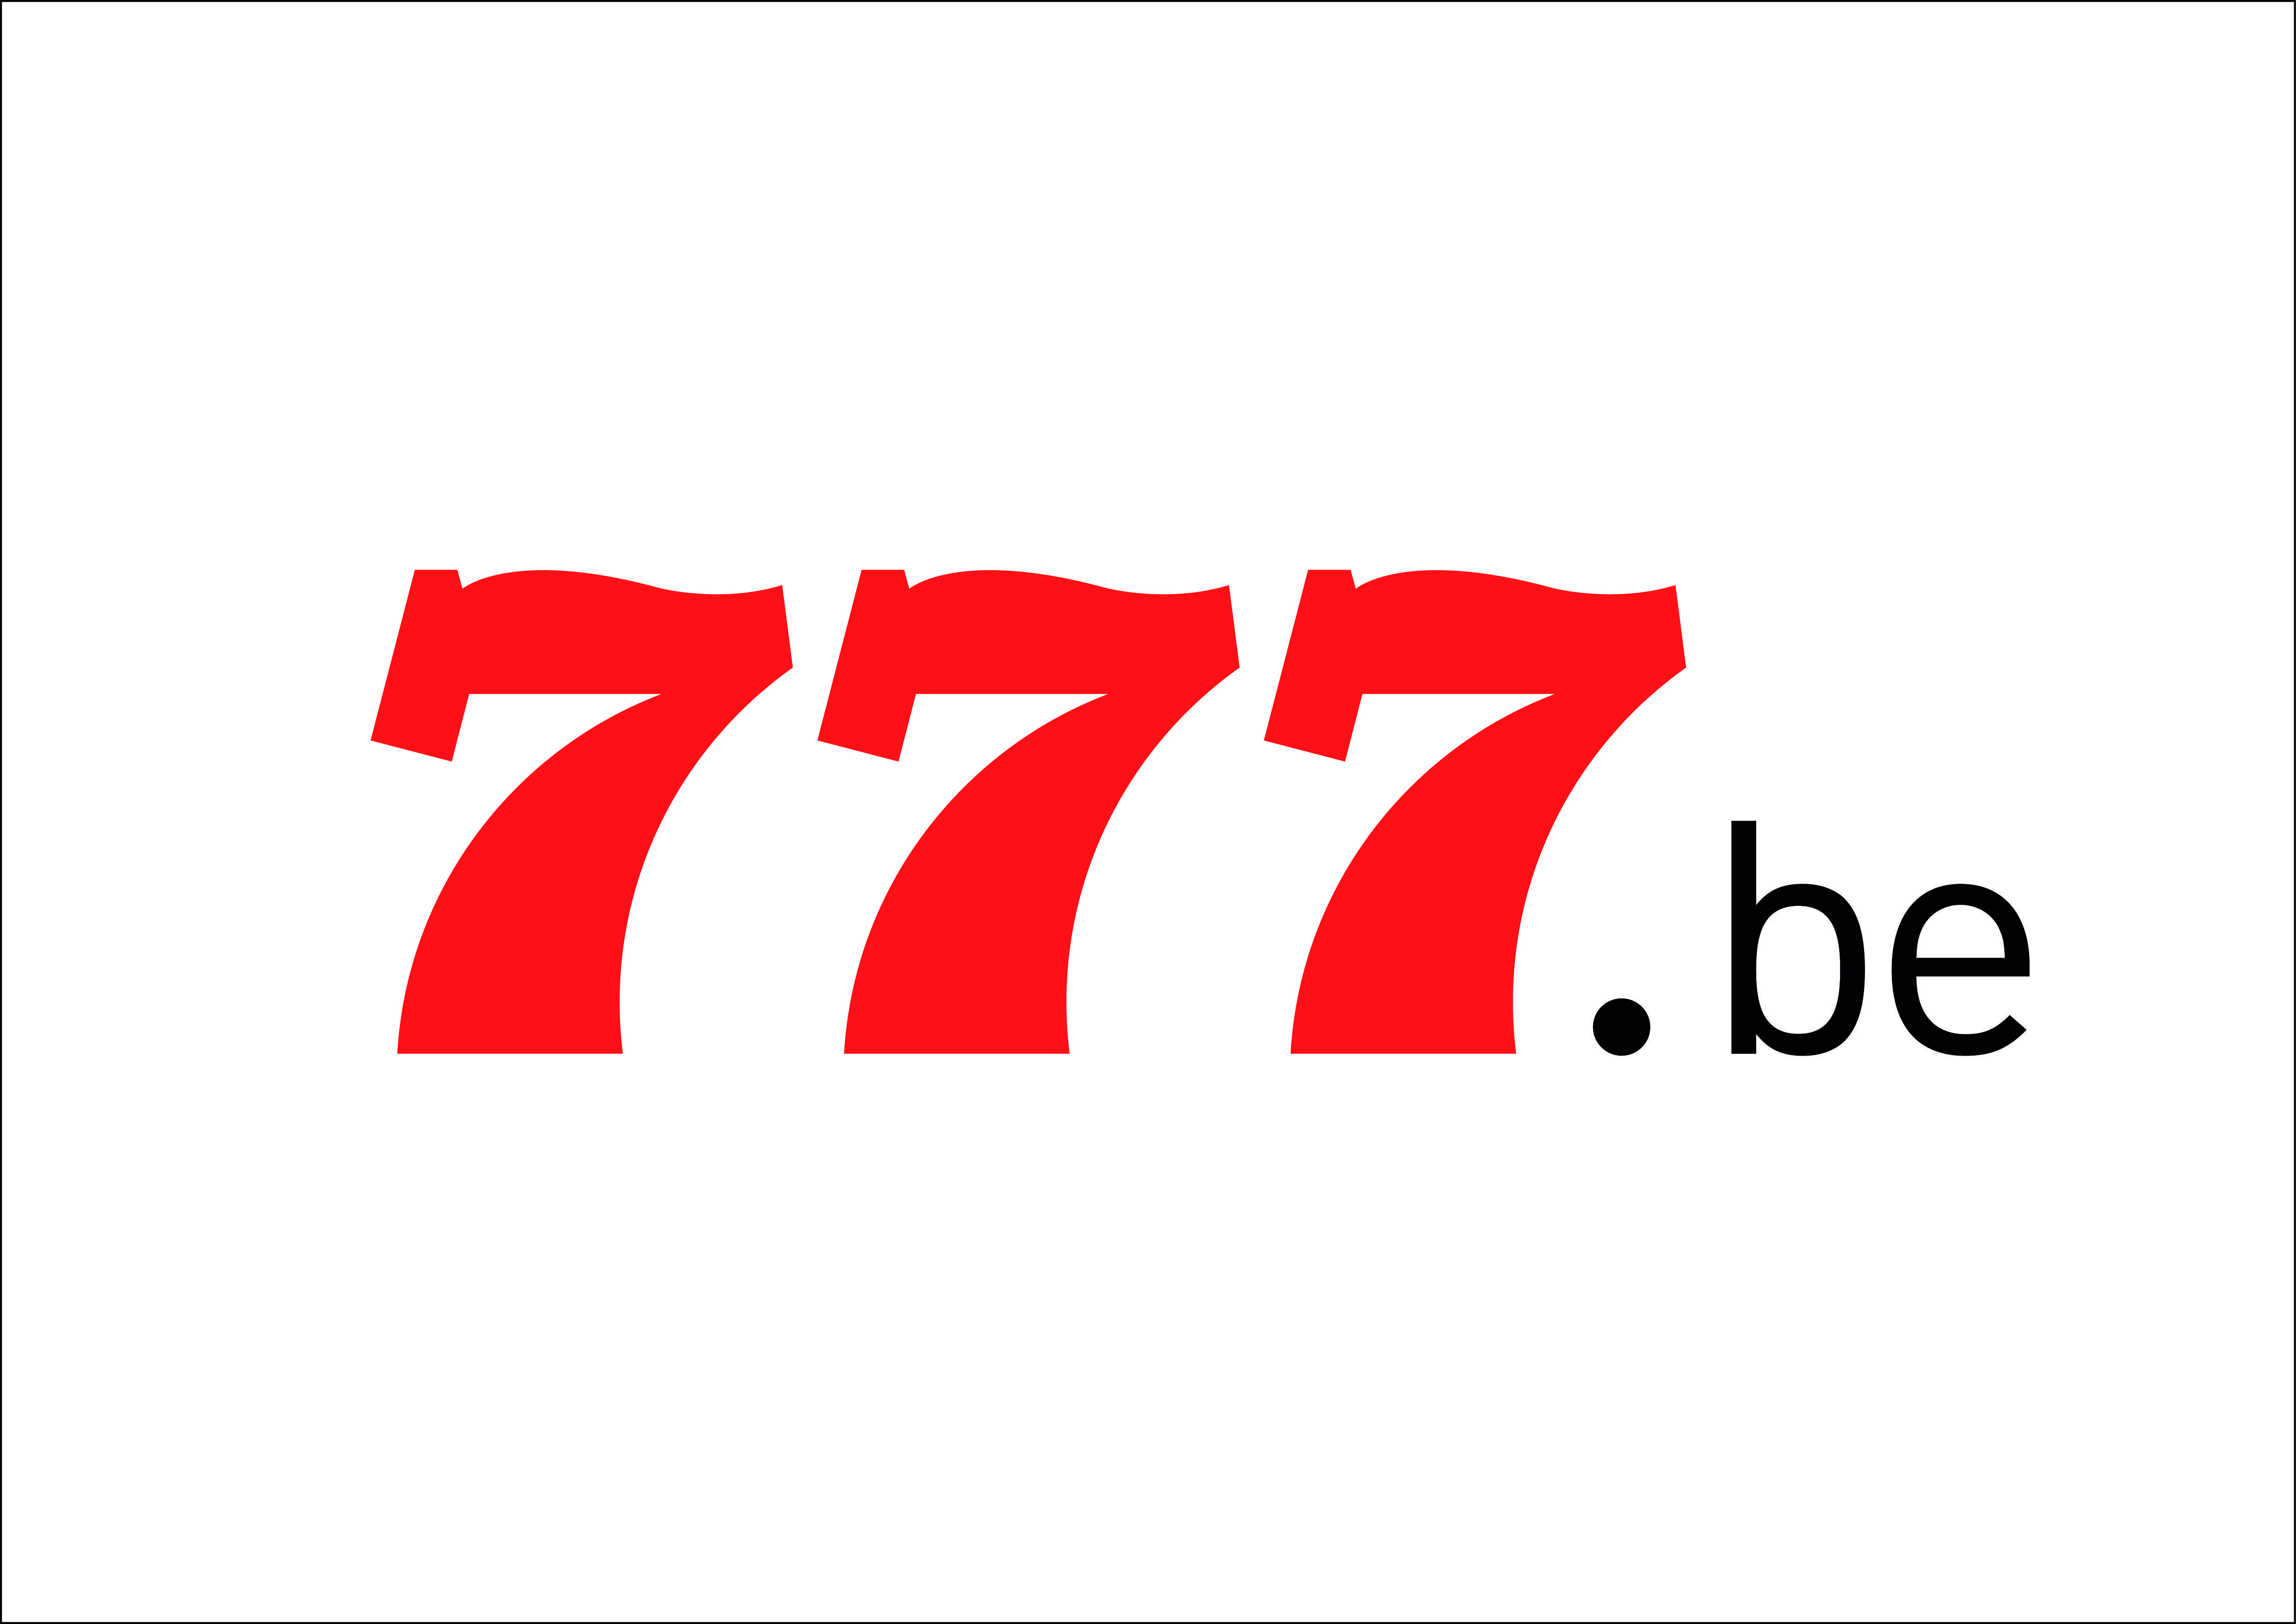 Artes Aquino - Criação de logo para betgol 777